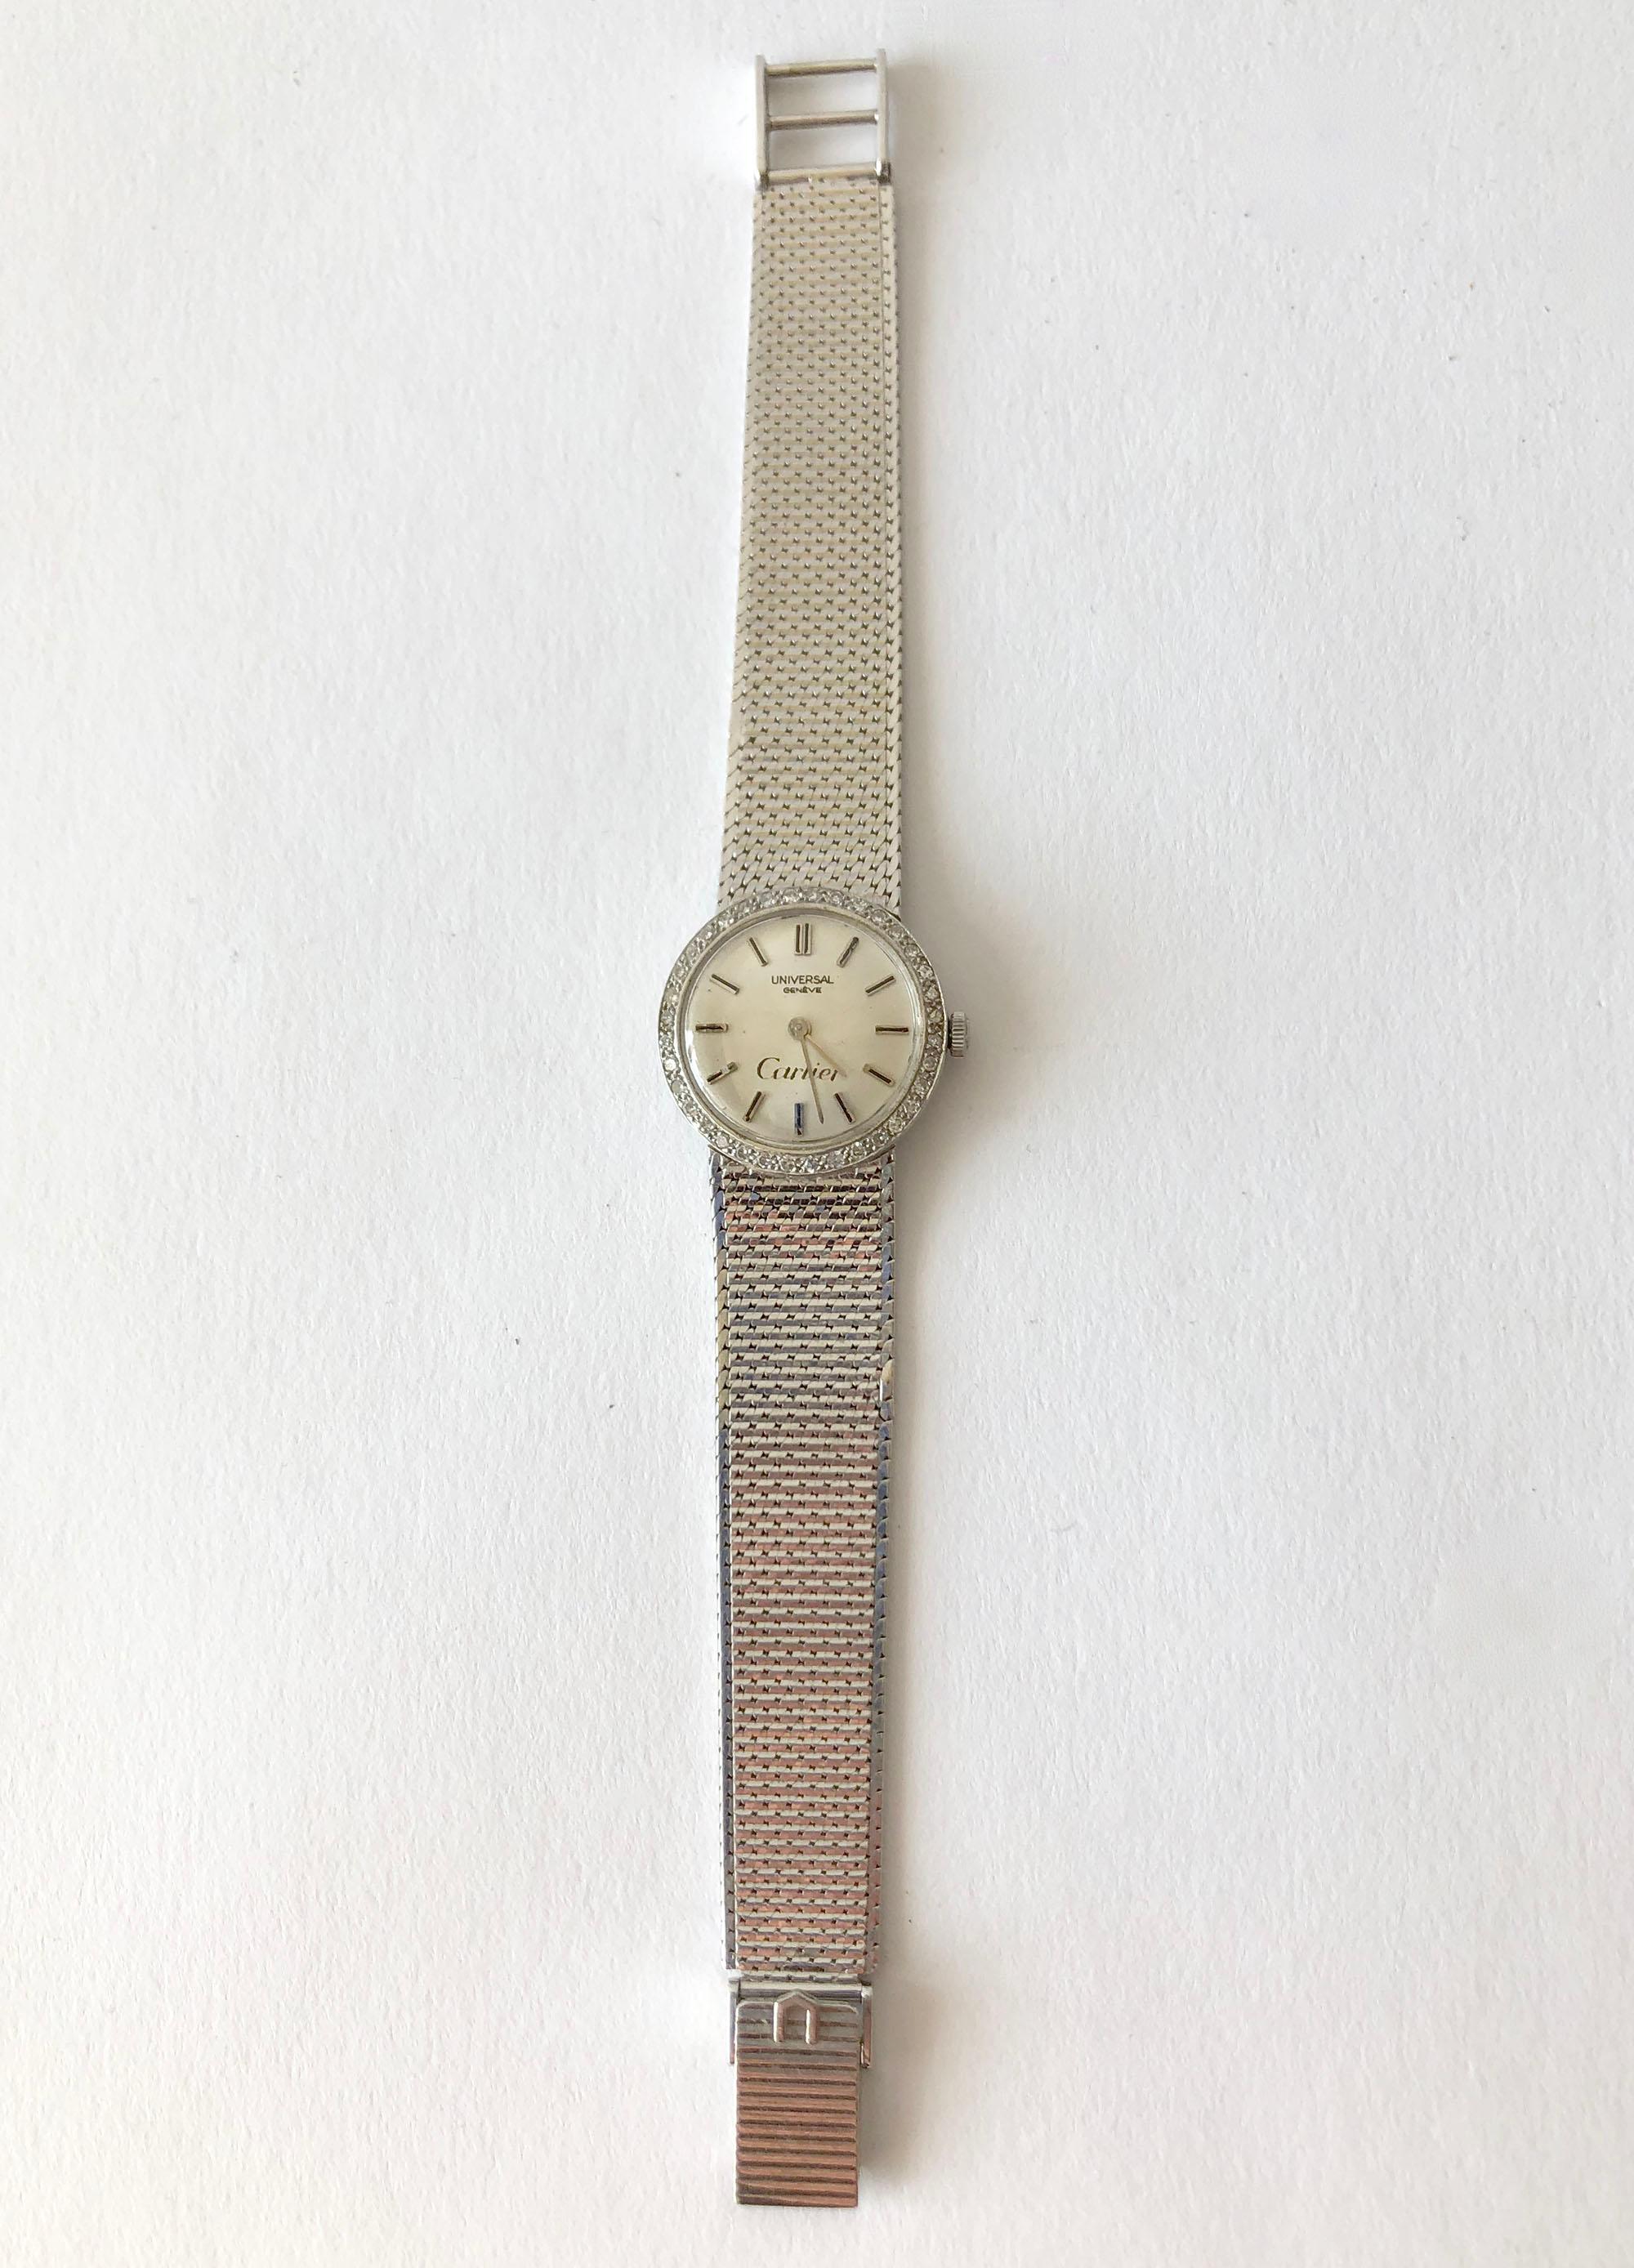 zenart geneve watch price